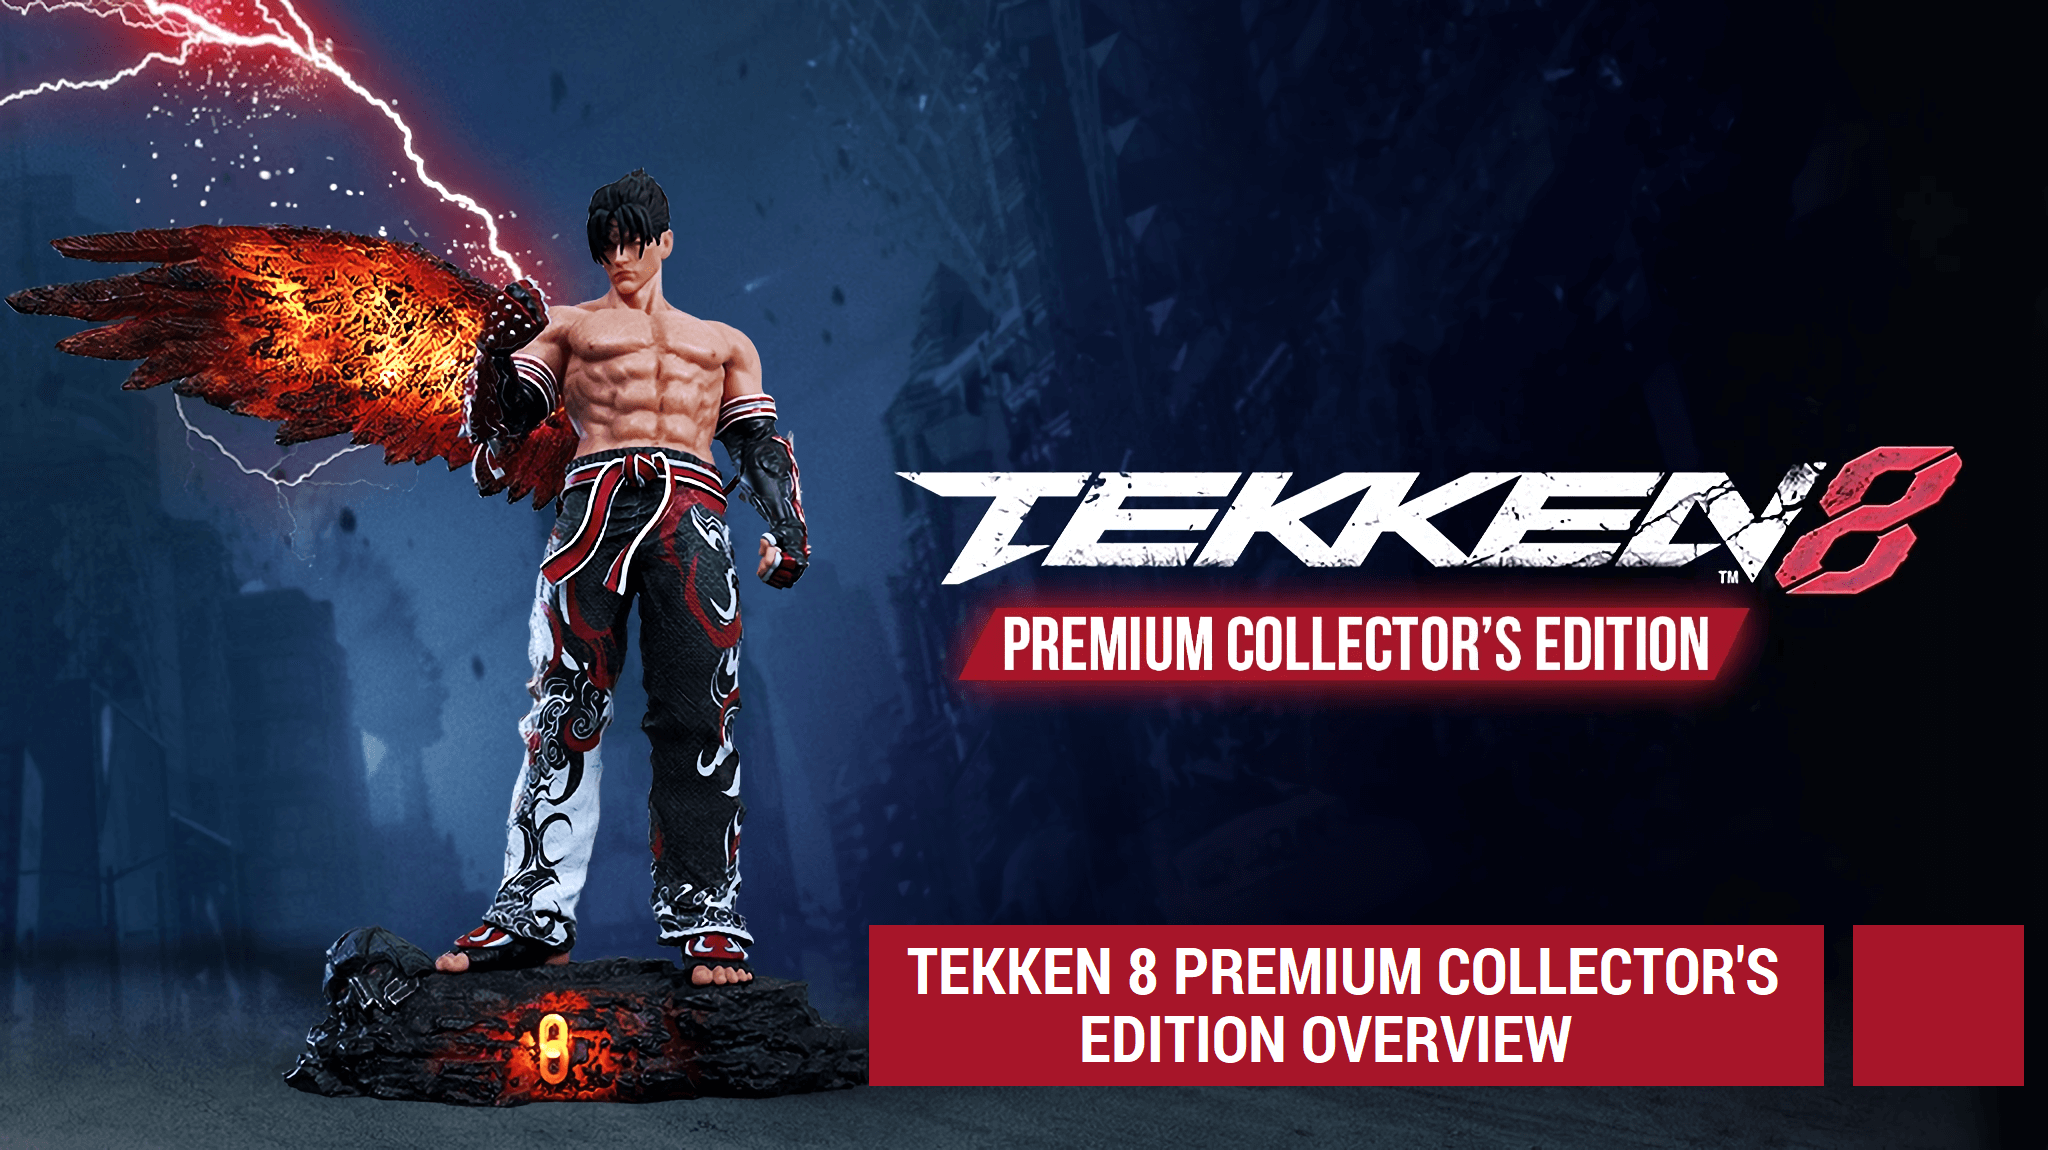 Tekken 8 Premium Collector’s Edition Overview